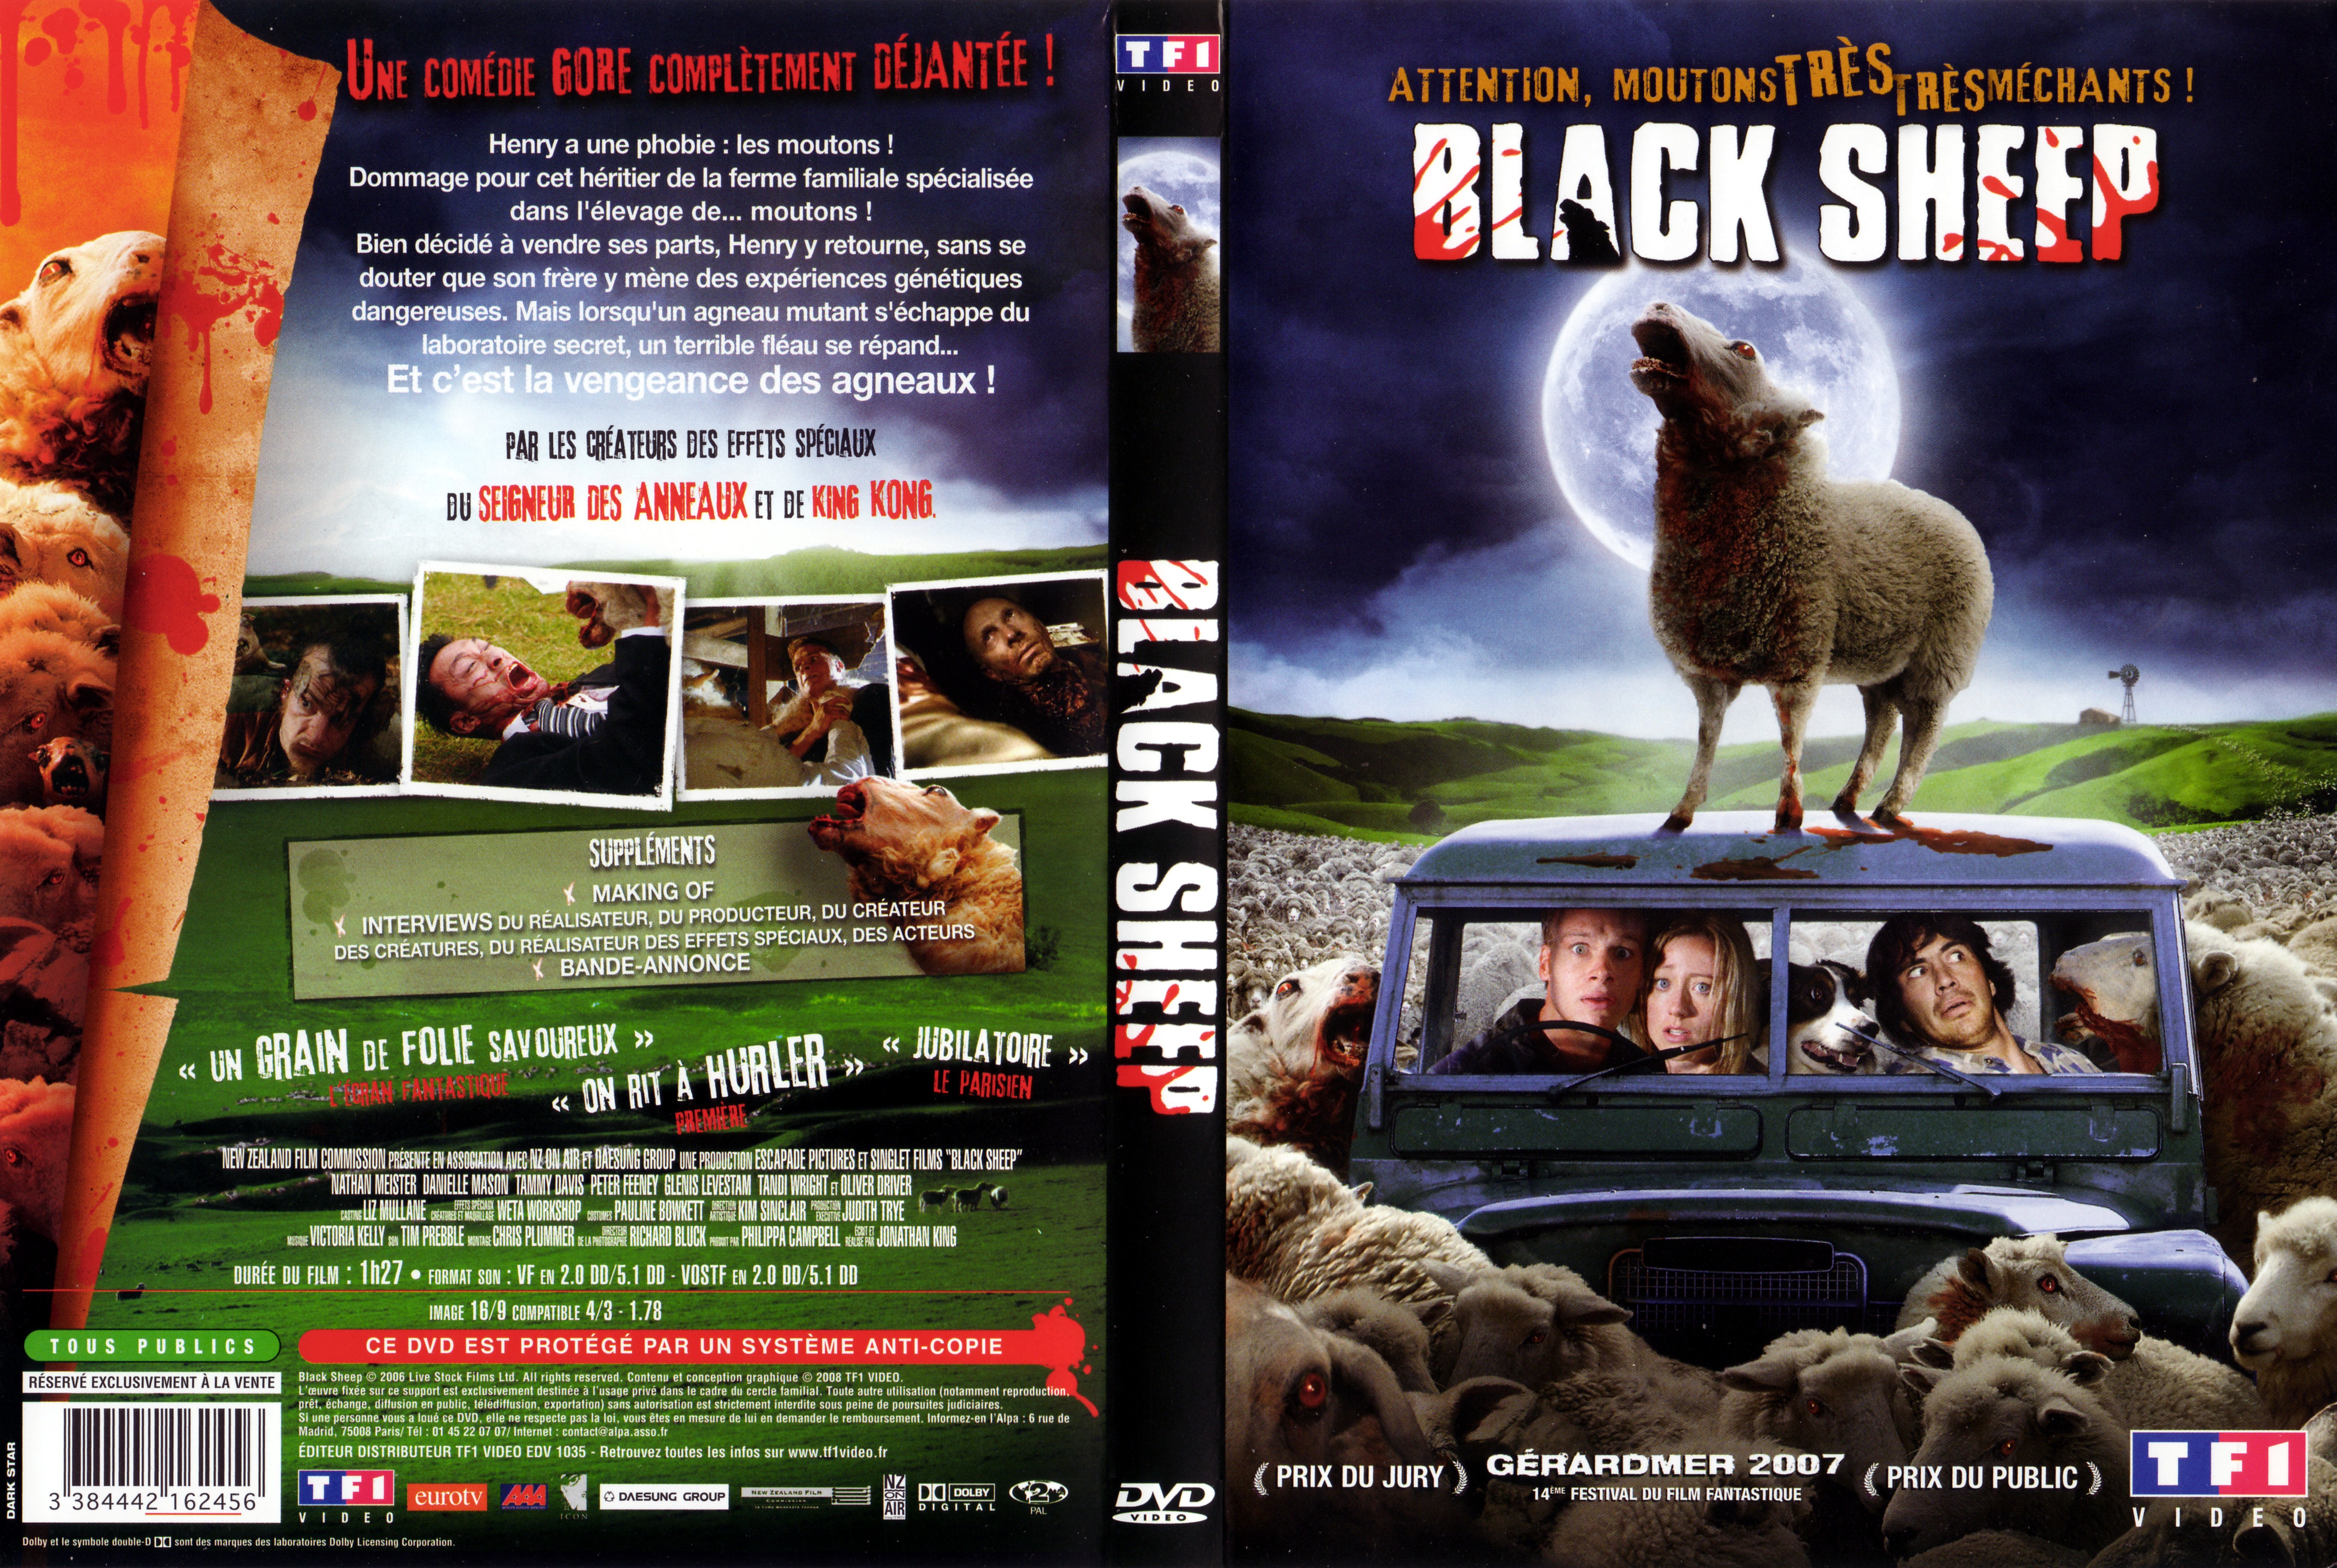 Jaquette DVD Black sheep v2